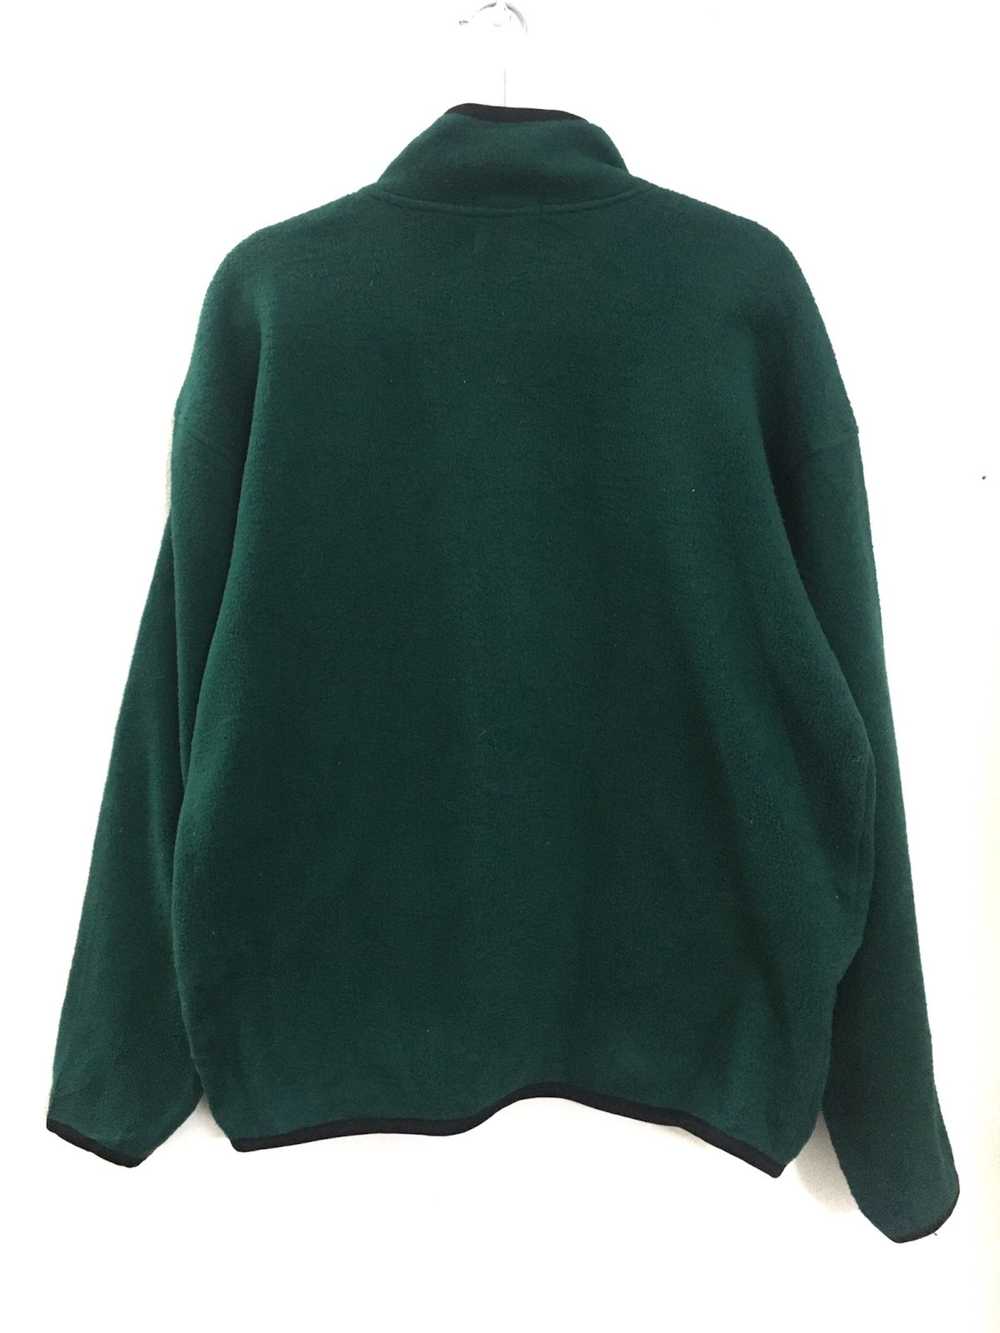 Boy London × Streetwear Boy London Fleece Sweater - image 6